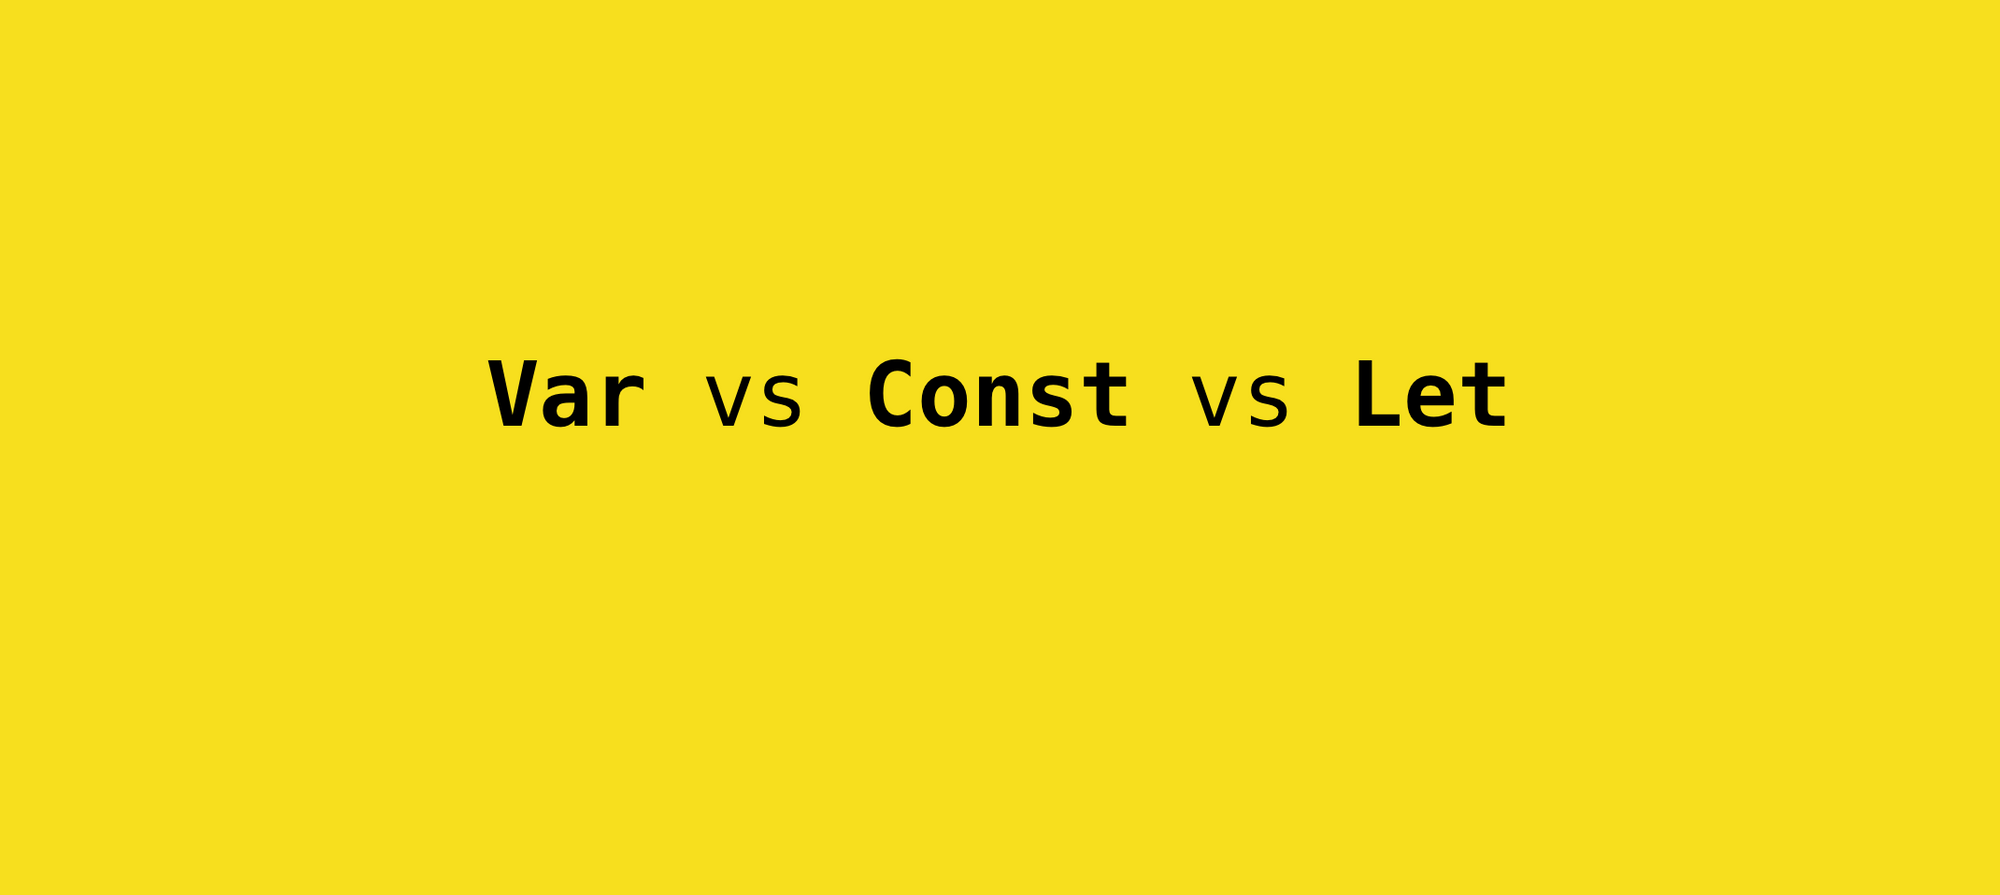 Var vs Const vs Let